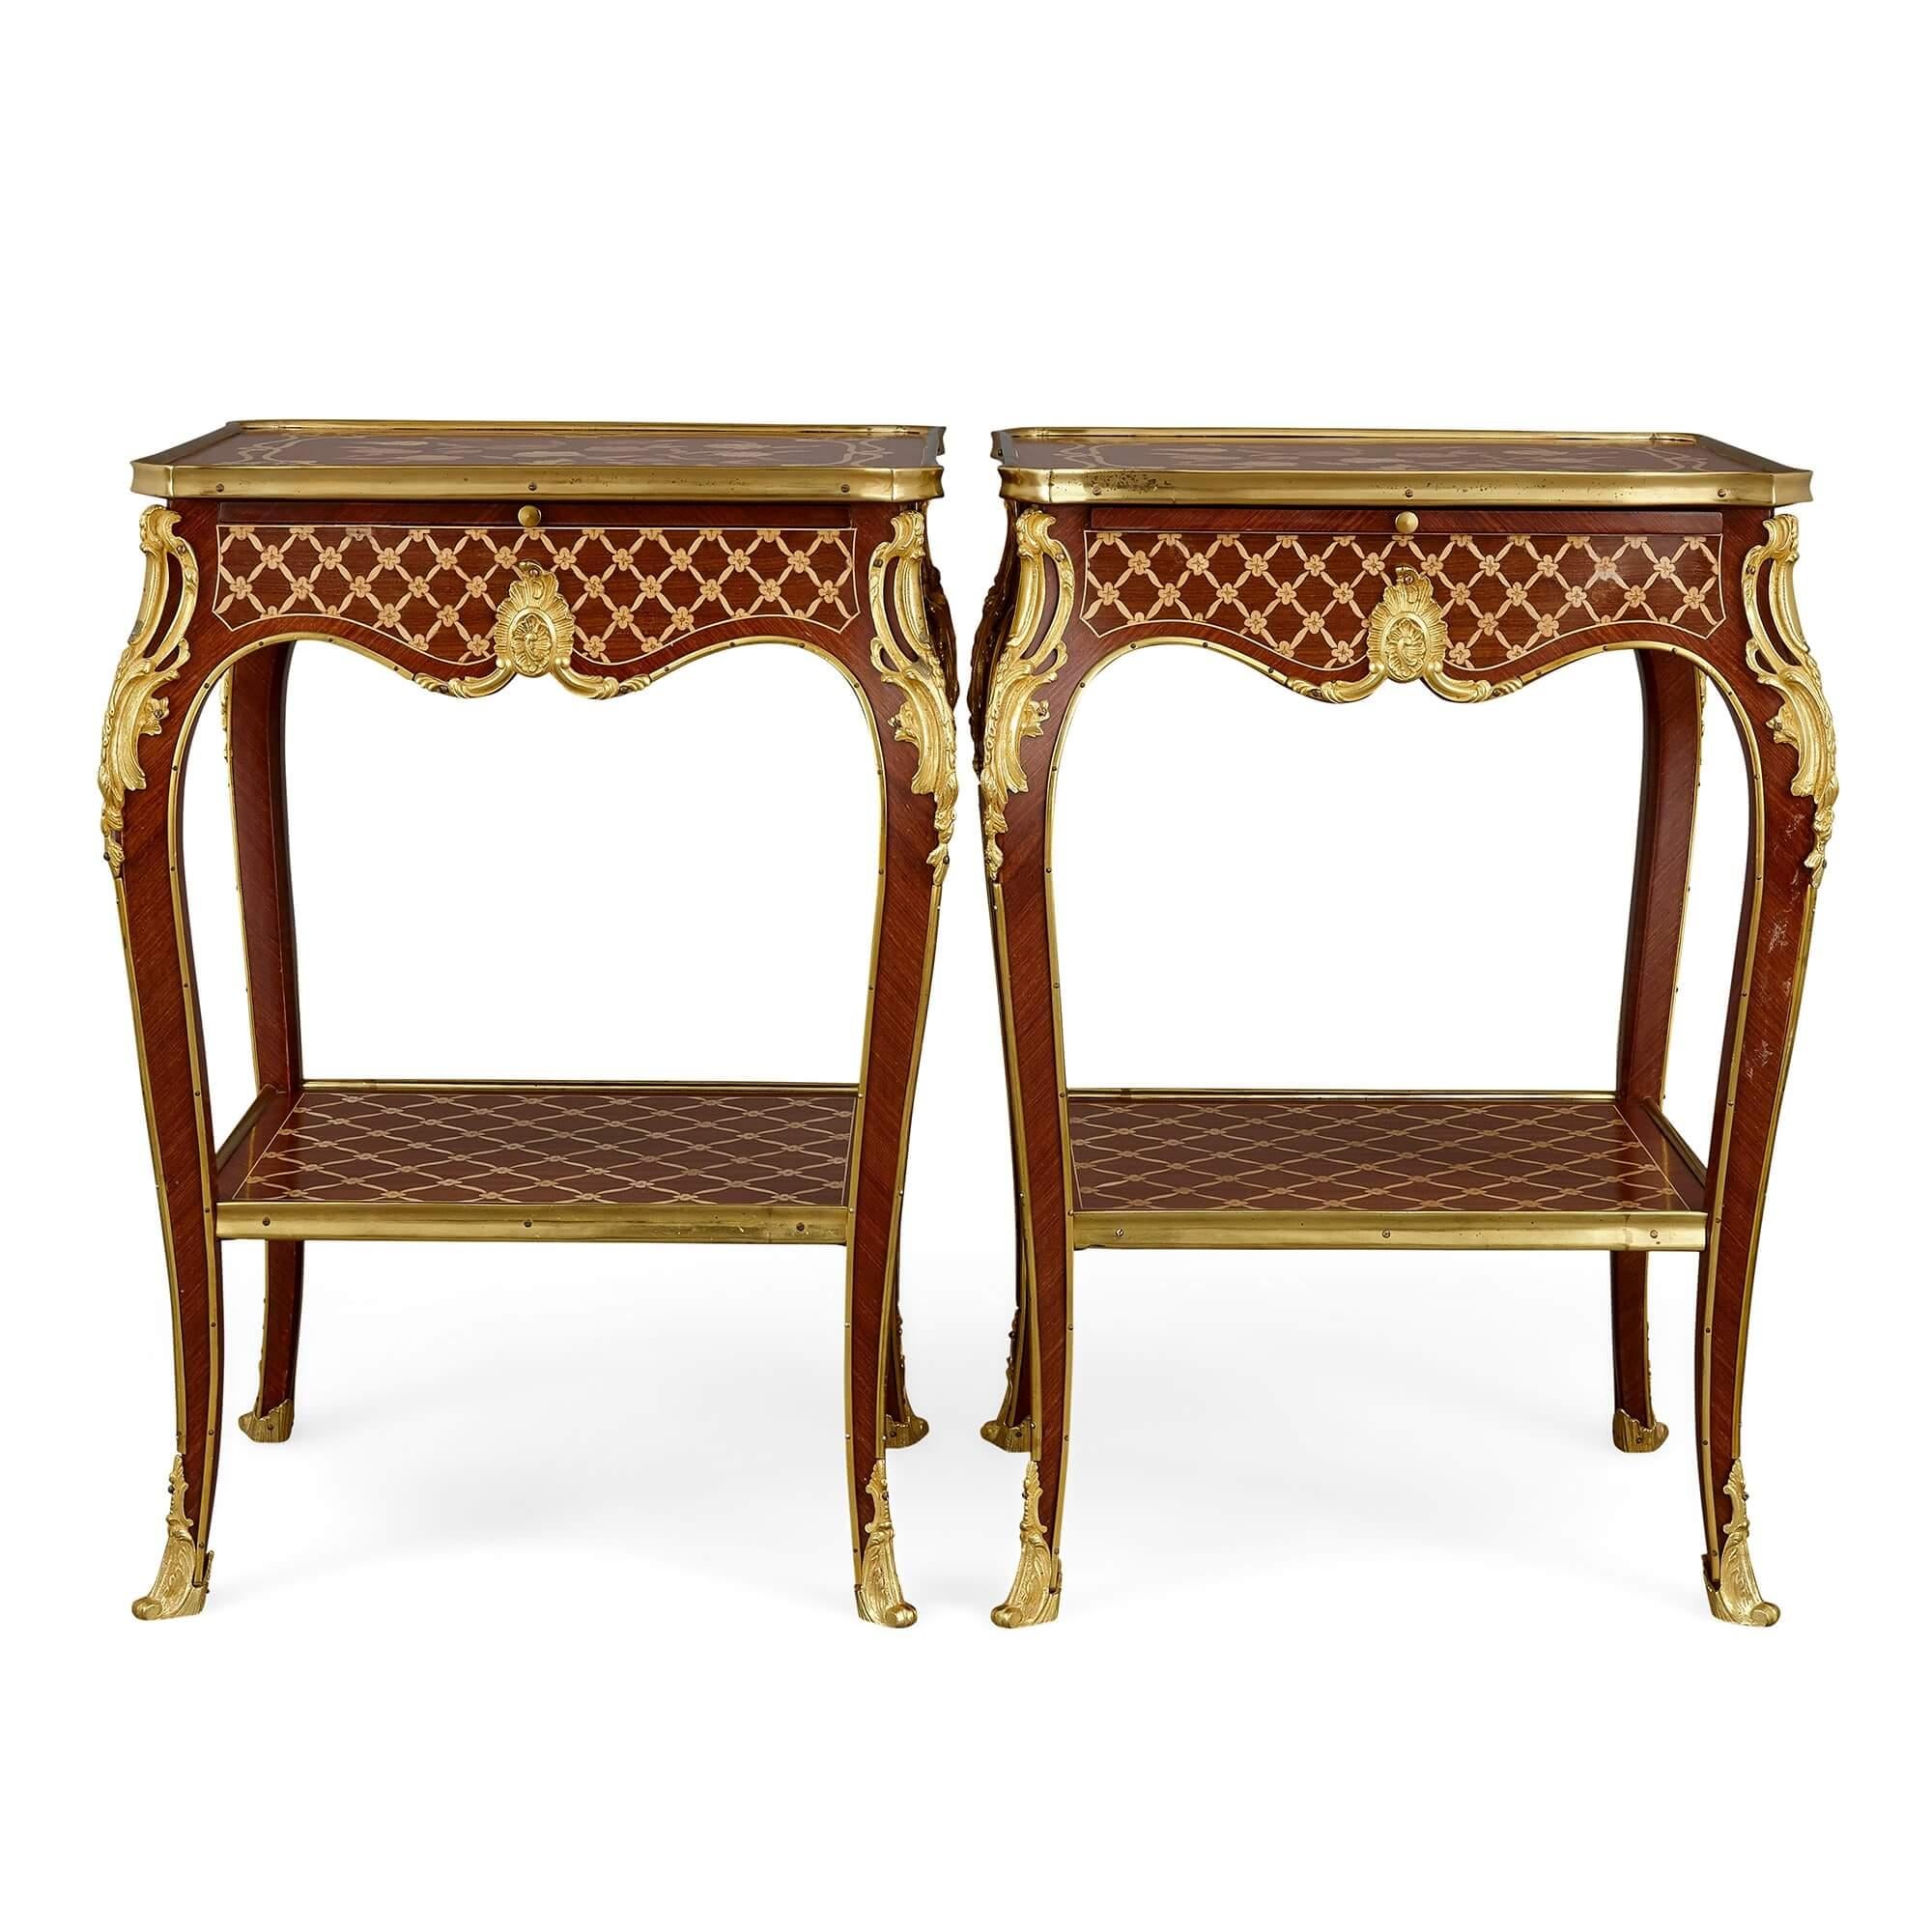 Mit ihren Intarsien-, Parkett- und Goldbronzendekorationen sind diese komplizierten und aufwendigen Beistelltische im Stil des Rokoko und Louis XV gefertigt. 

Dieses Paar Beistelltische im Louis XV-Stil ist mit drei verschiedenen Techniken